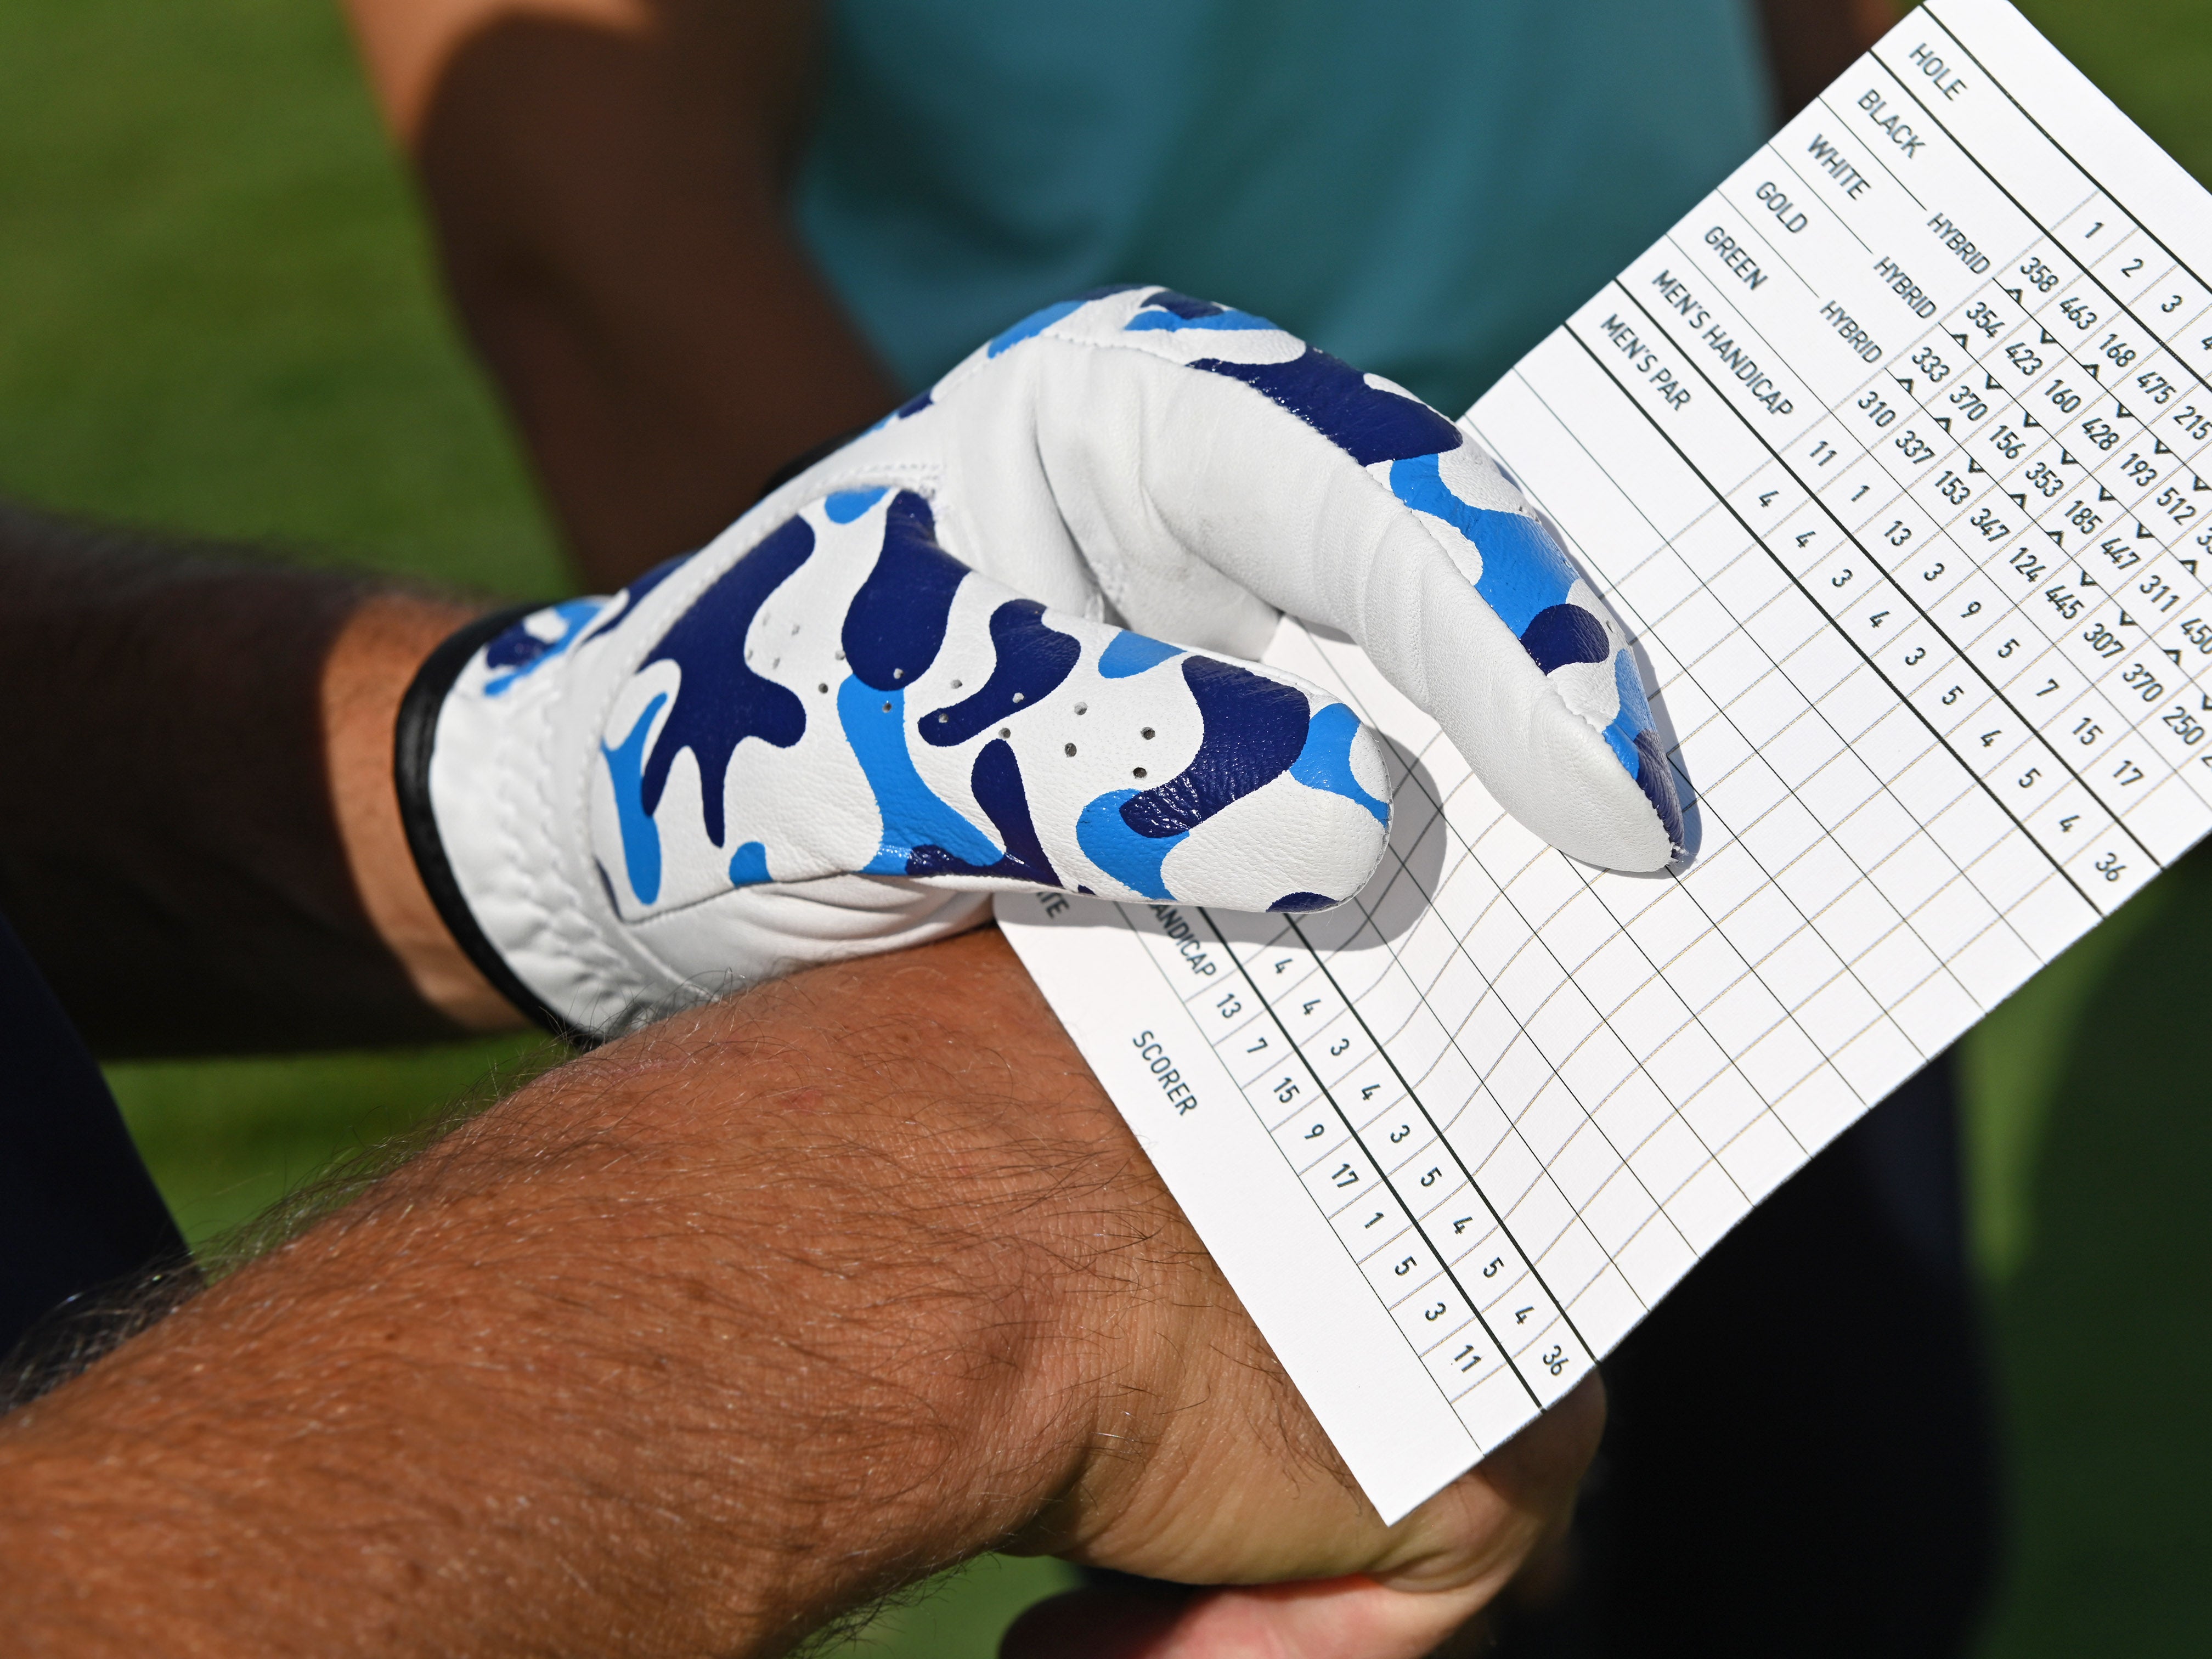 Fresco Golf Glove Blue Camo